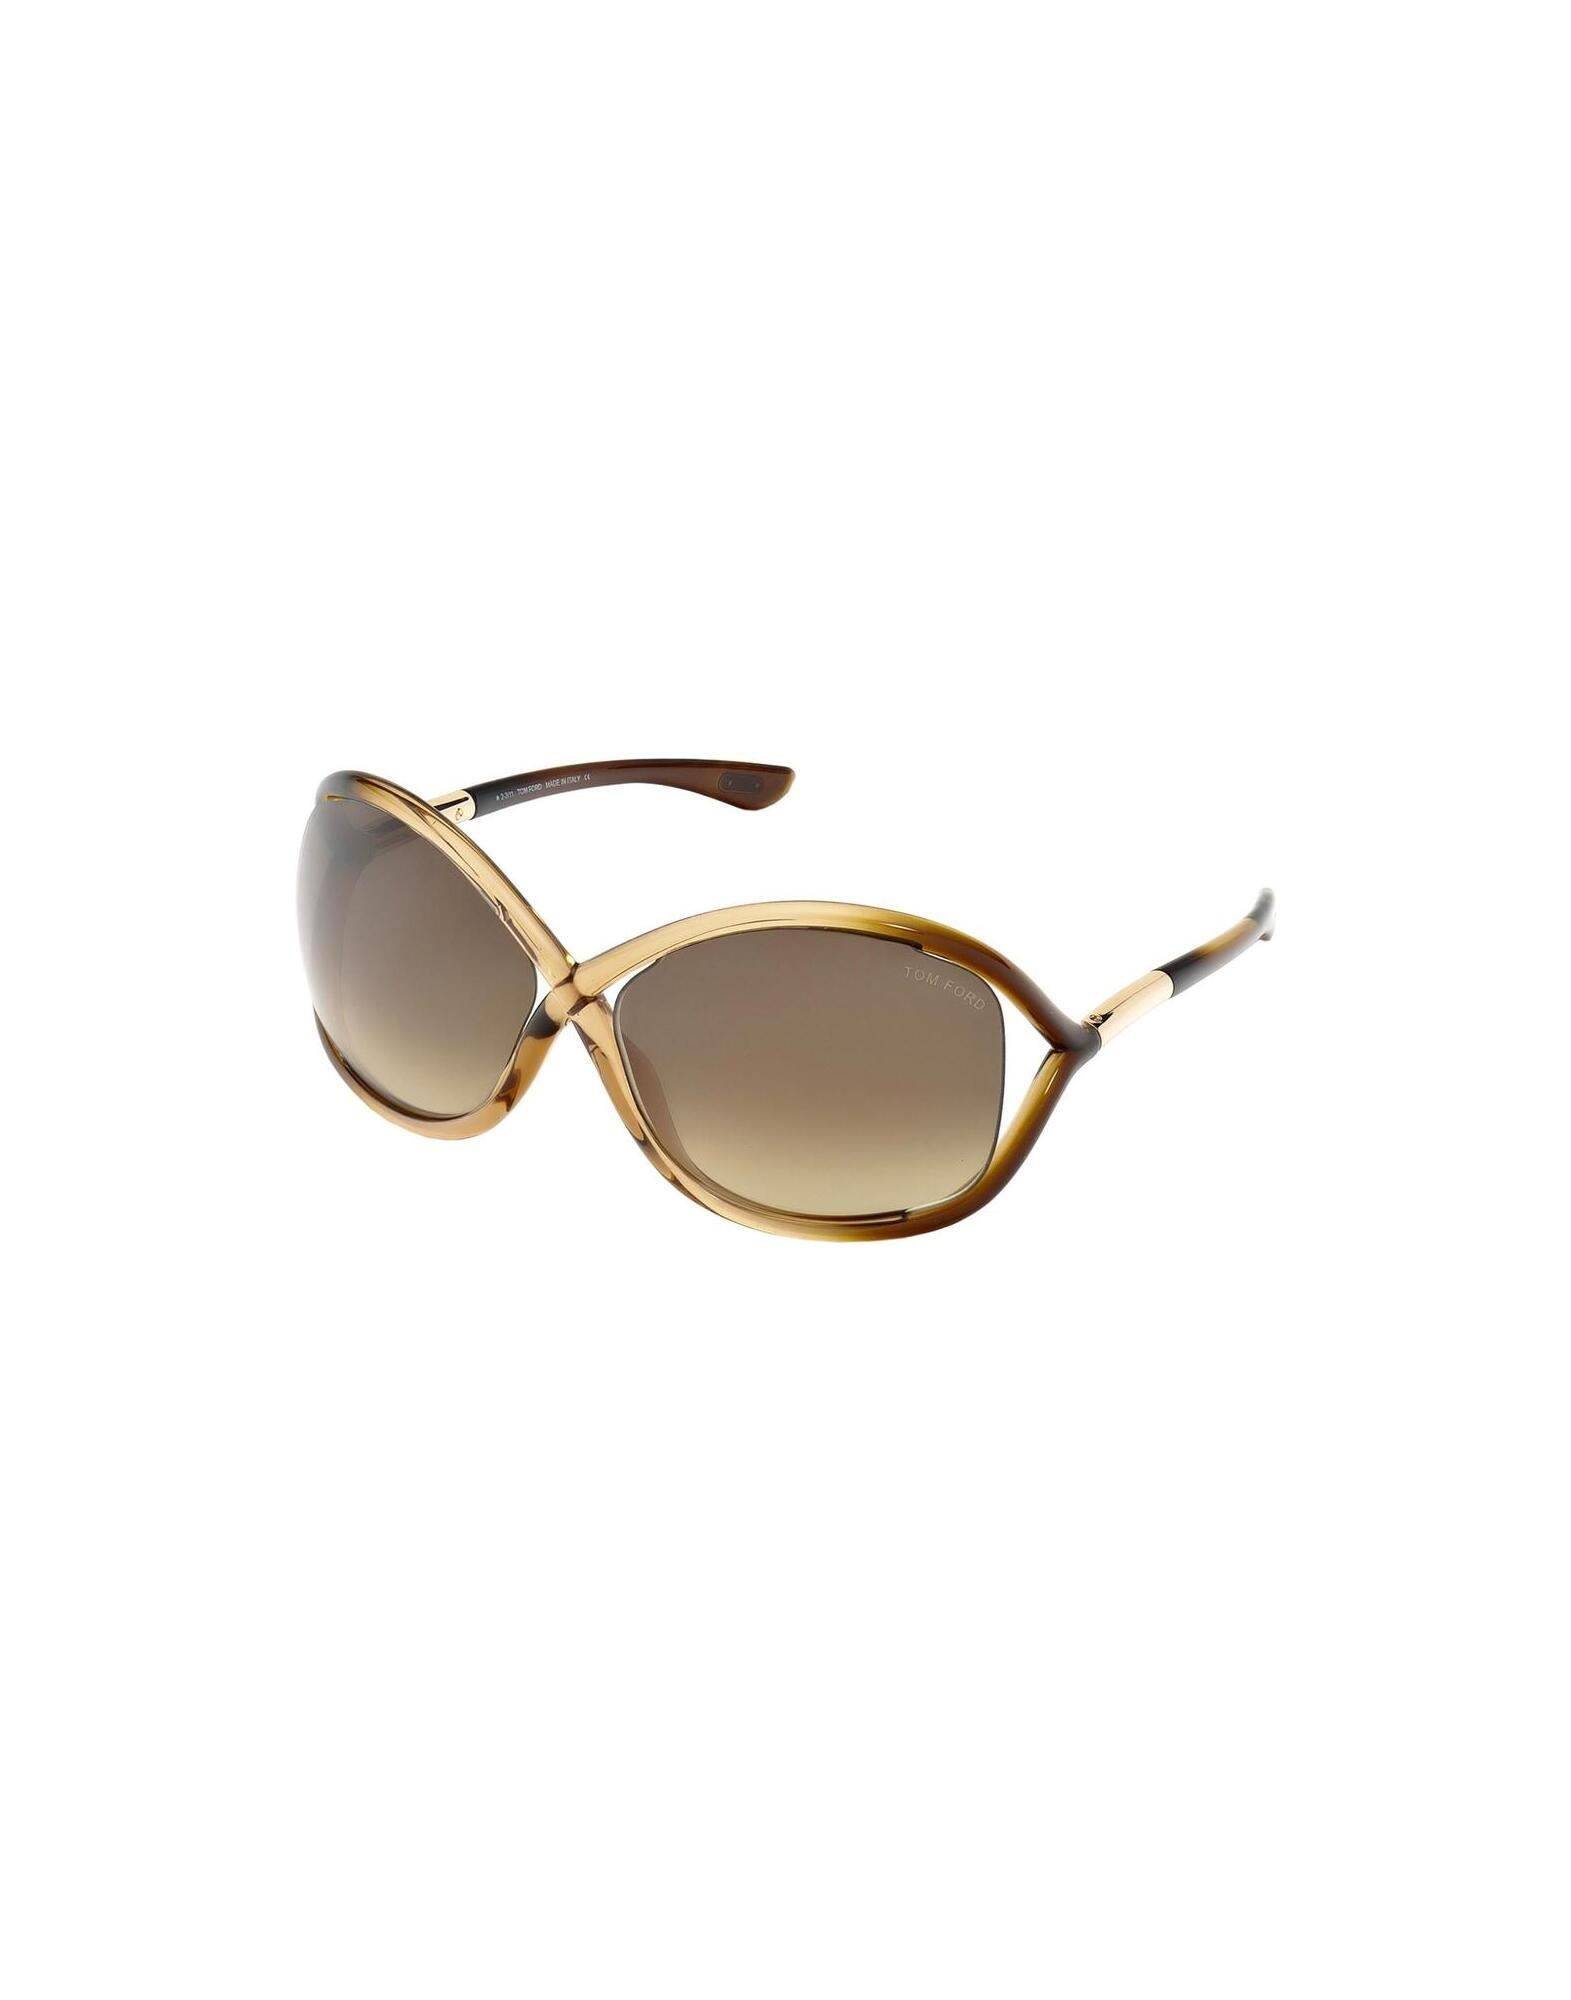 Tom ford whitney sunglasses • Find på PriceRunner »